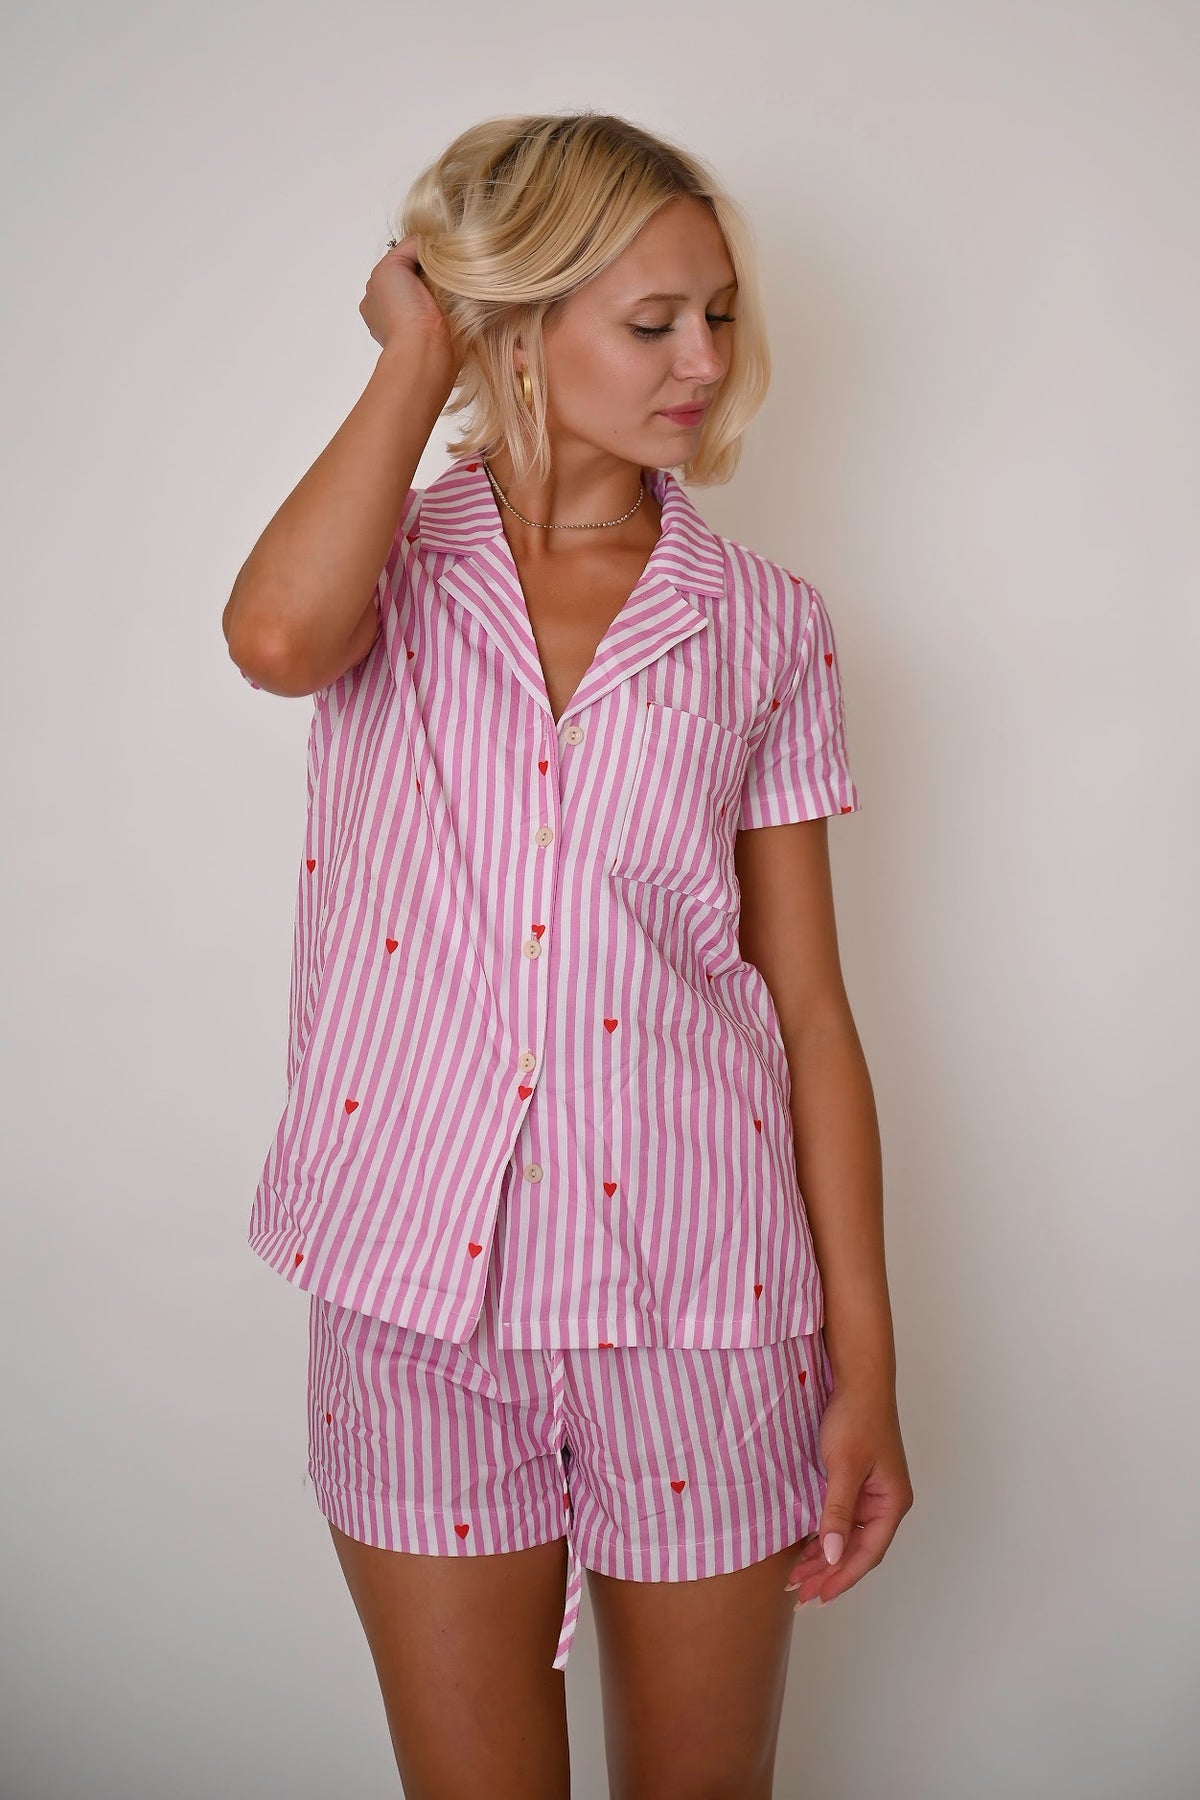 Sunrise Bliss Pajama Set - Pink